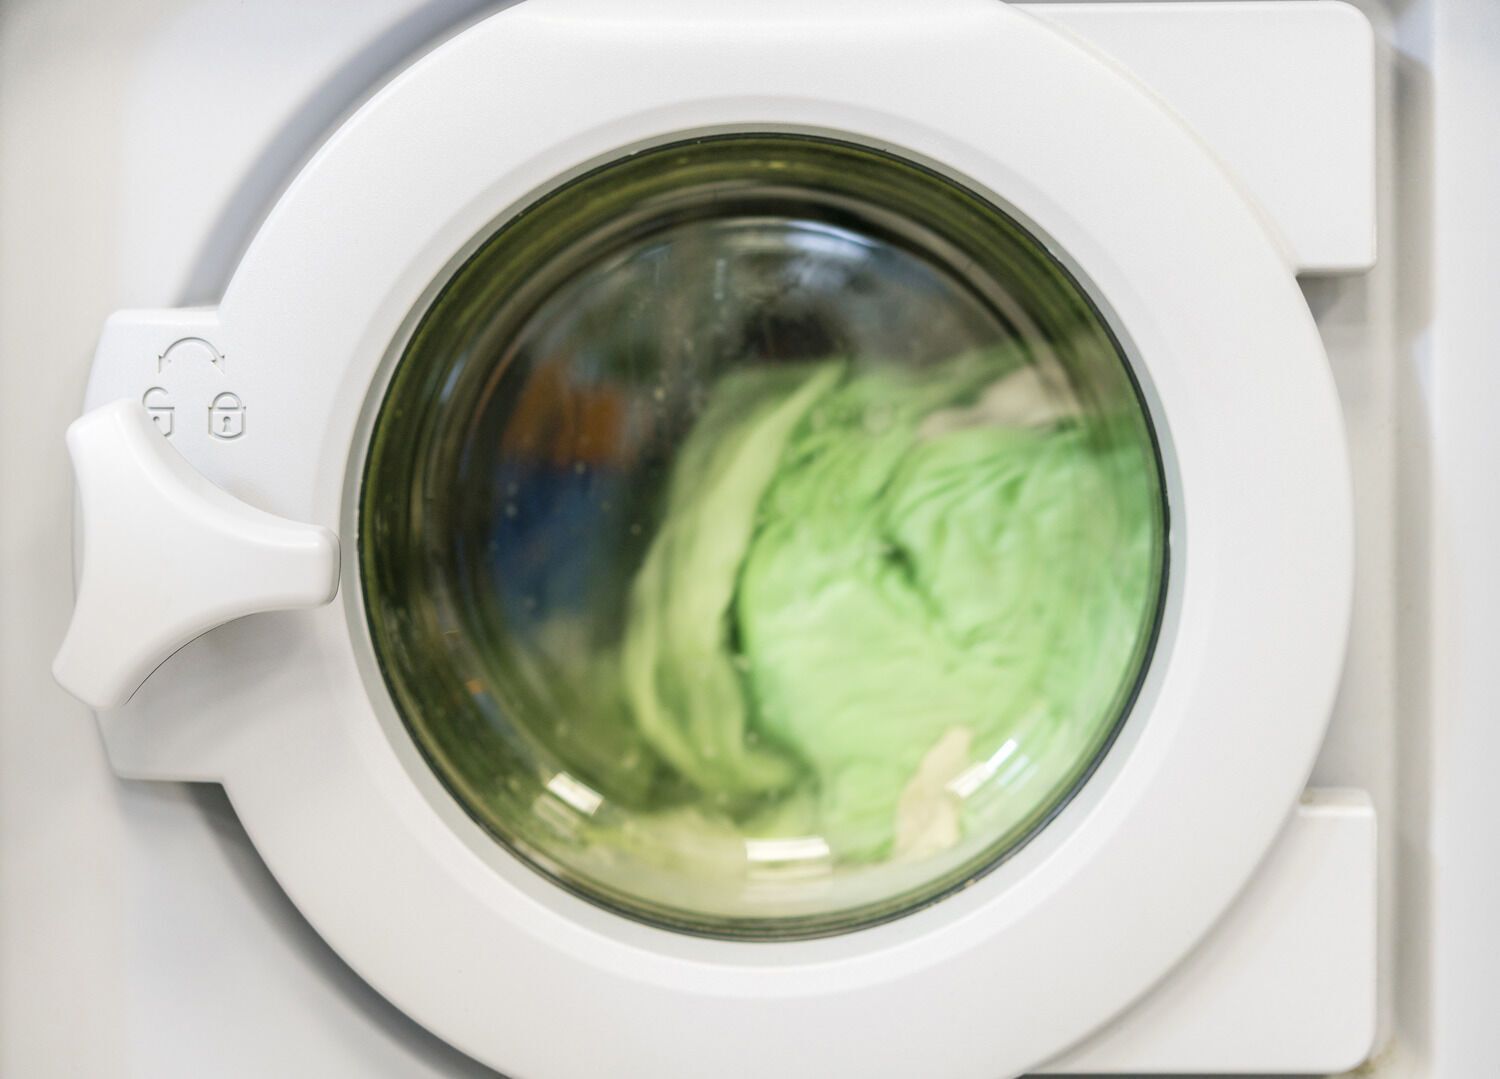 Безопасно ли использование капсул со стиральным порошком: эксперты советуют быть осторожными